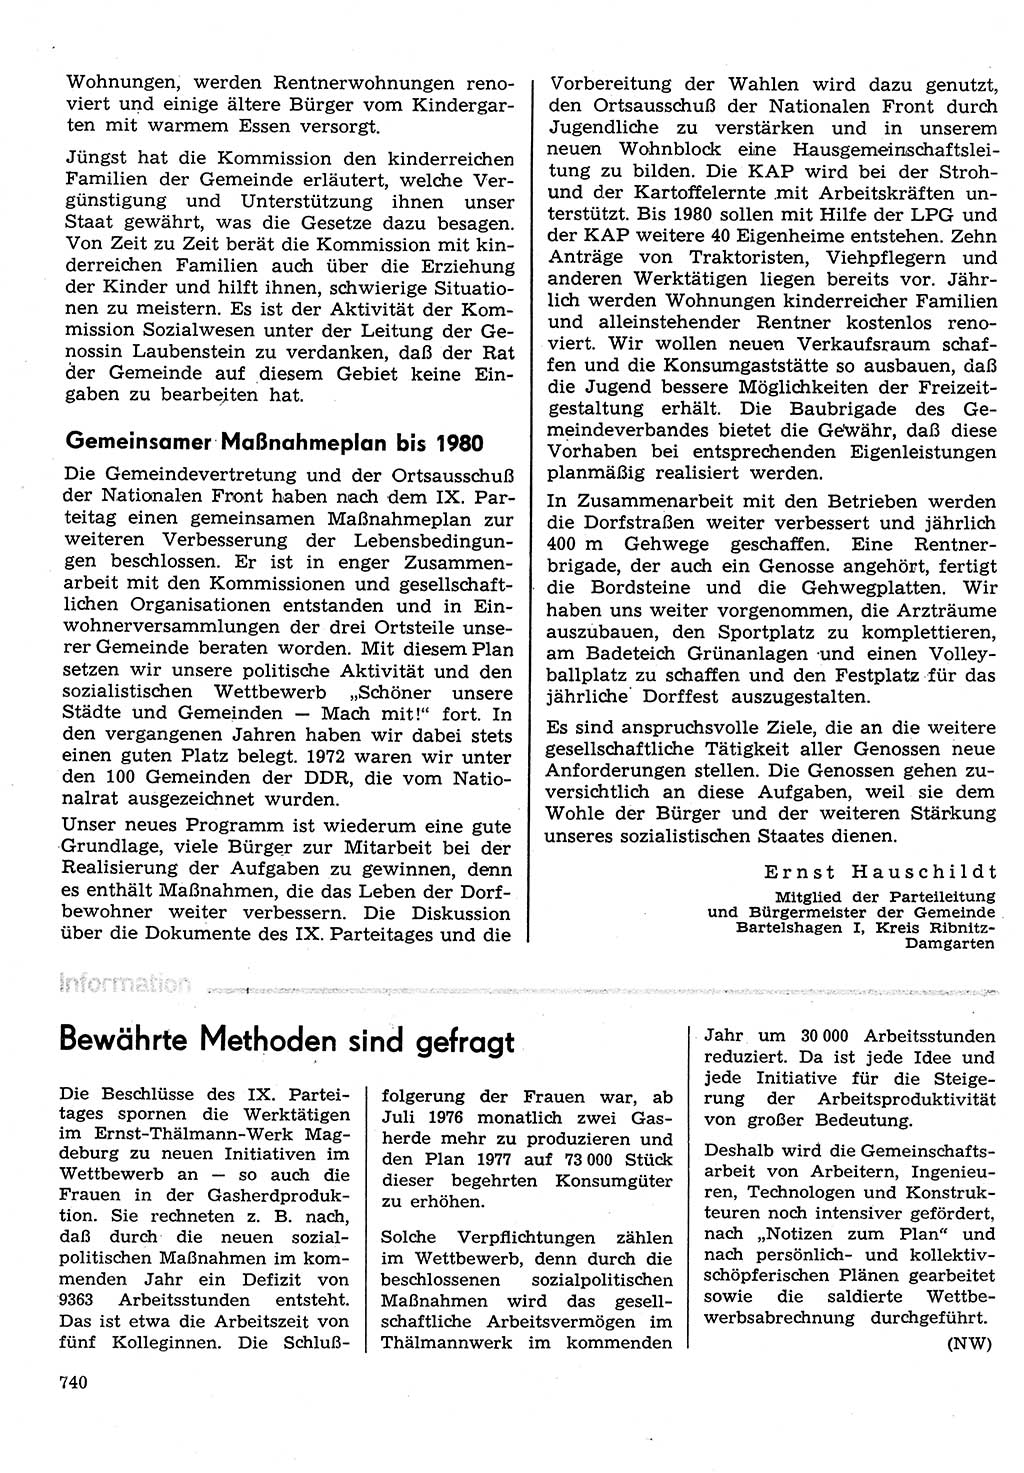 Neuer Weg (NW), Organ des Zentralkomitees (ZK) der SED (Sozialistische Einheitspartei Deutschlands) für Fragen des Parteilebens, 31. Jahrgang [Deutsche Demokratische Republik (DDR)] 1976, Seite 740 (NW ZK SED DDR 1976, S. 740)